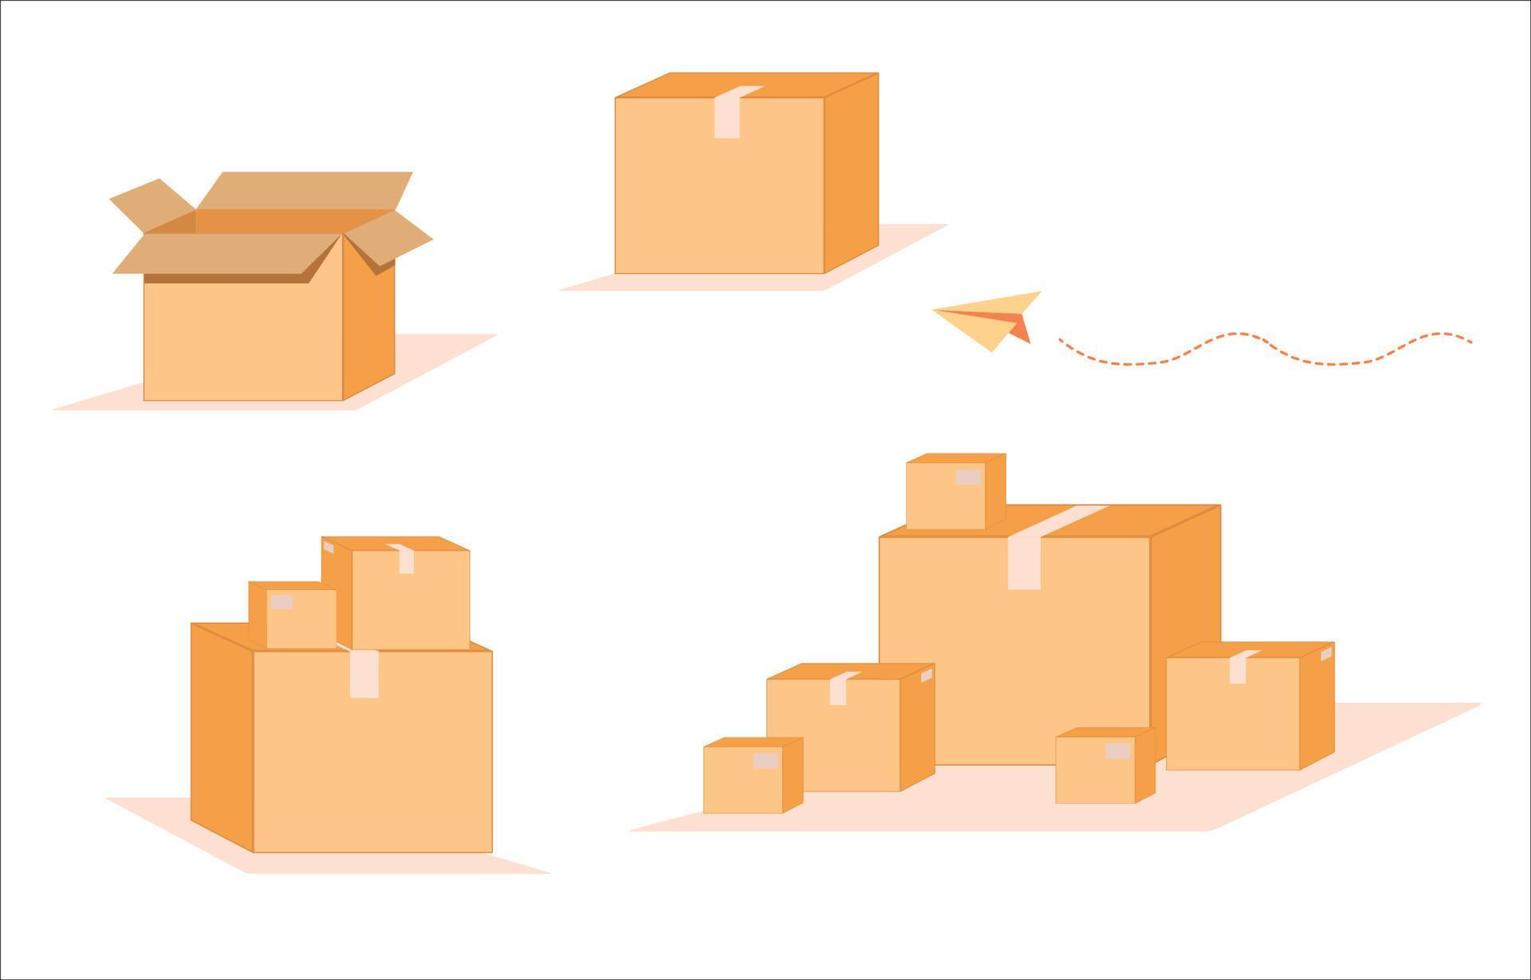 realistisk falsk upp uppsättning av papper skiften låda, kartong, posta lådor. från sida, främre, topp se öppen och stängd. paket förpackning mall - vektor illustration.